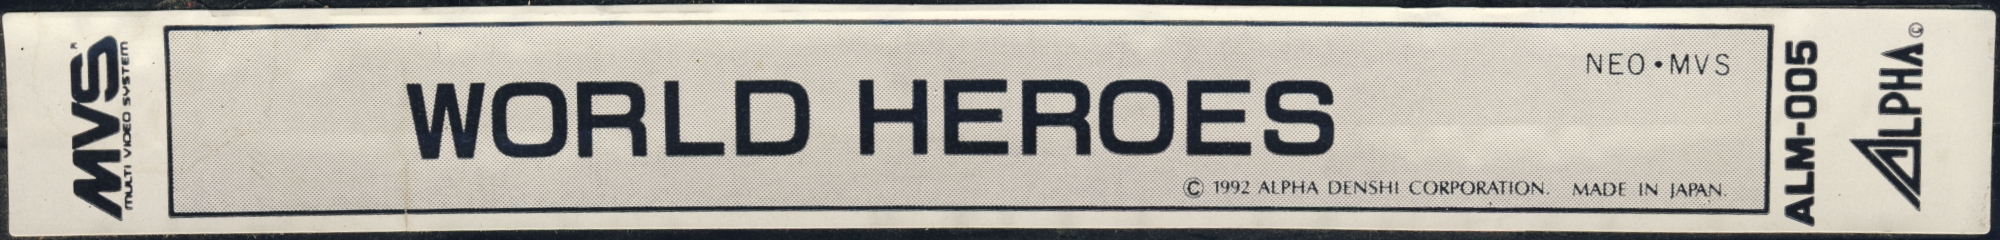 World heroes us label.jpg